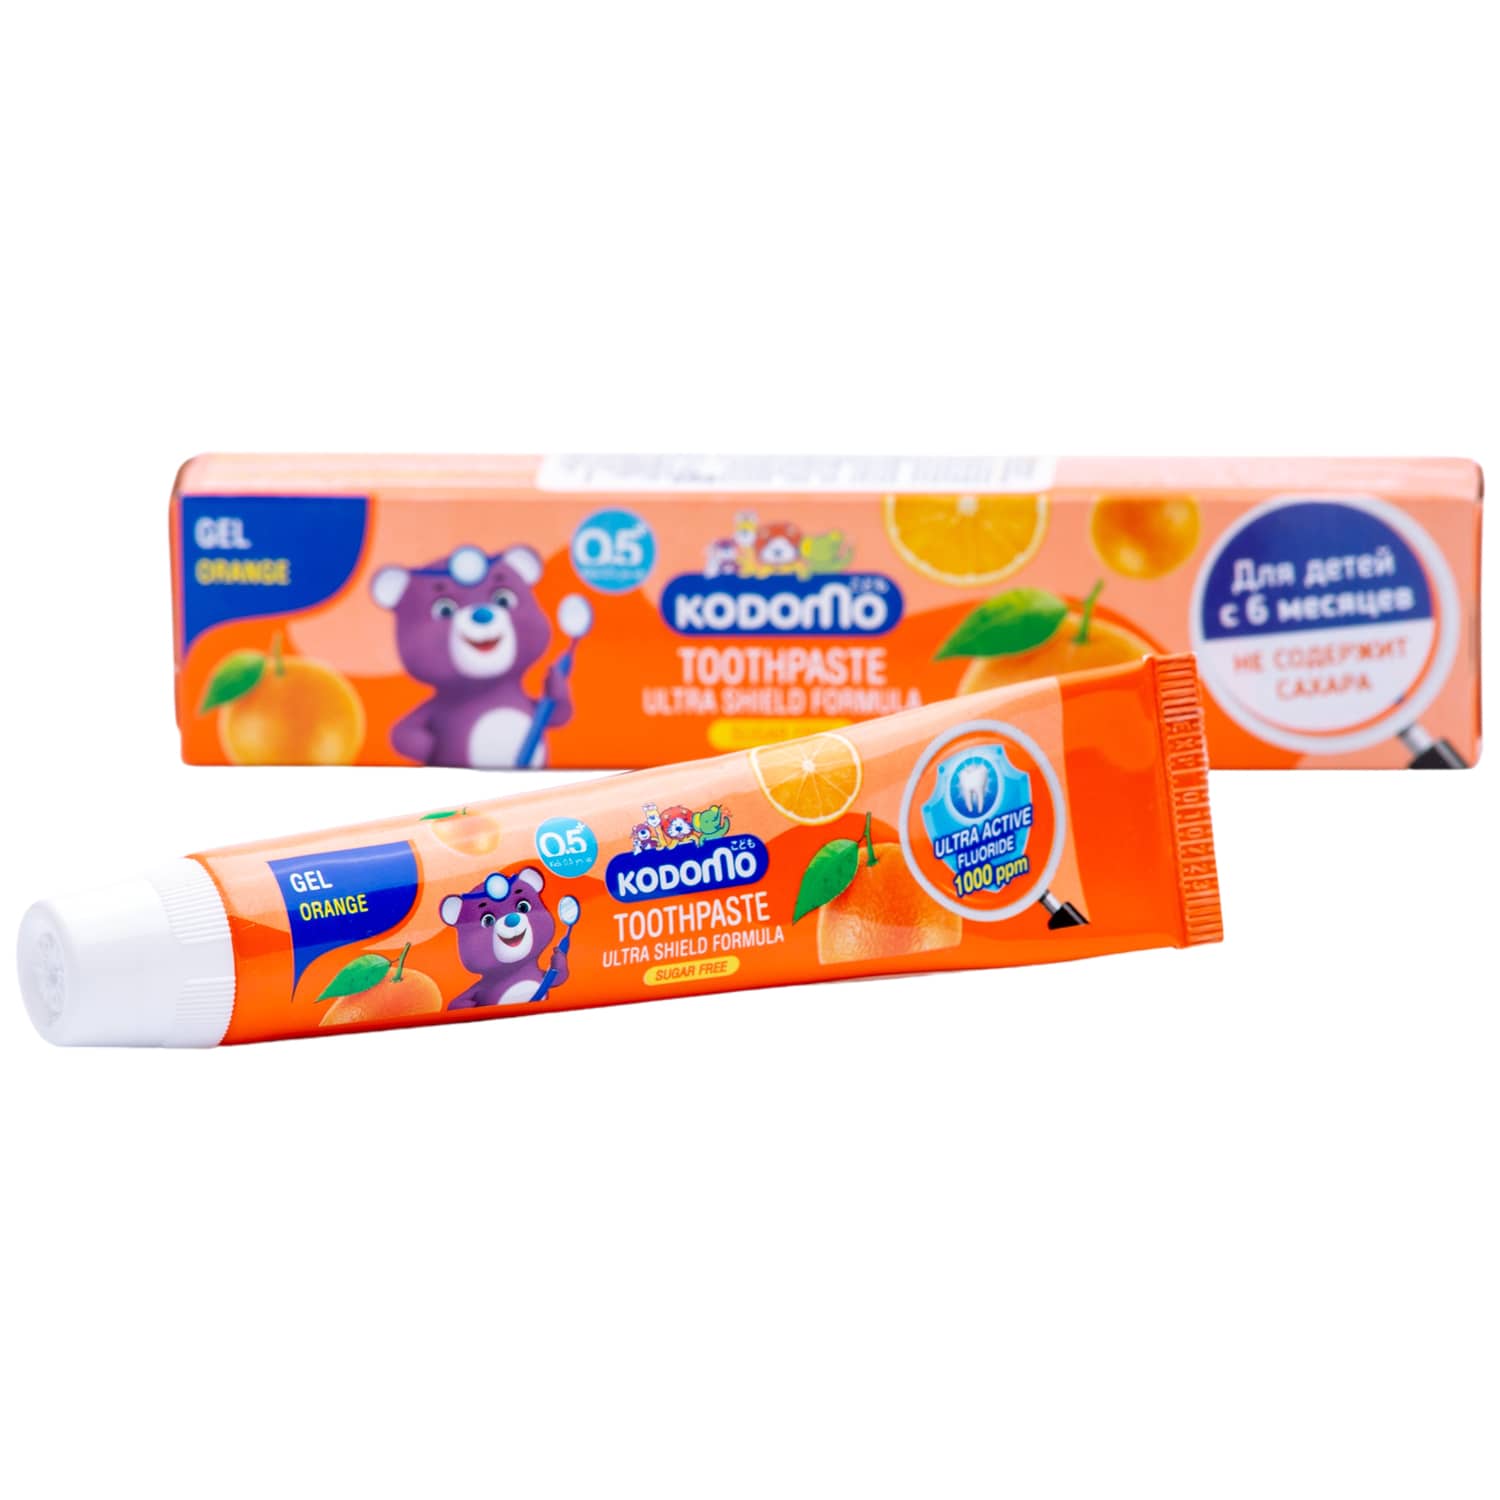 Lion Thailand Зубная гелевая паста для детей с 6 месяцев с ароматом апельсина, 40 г (Lion Thailand, Kodomo) цена и фото